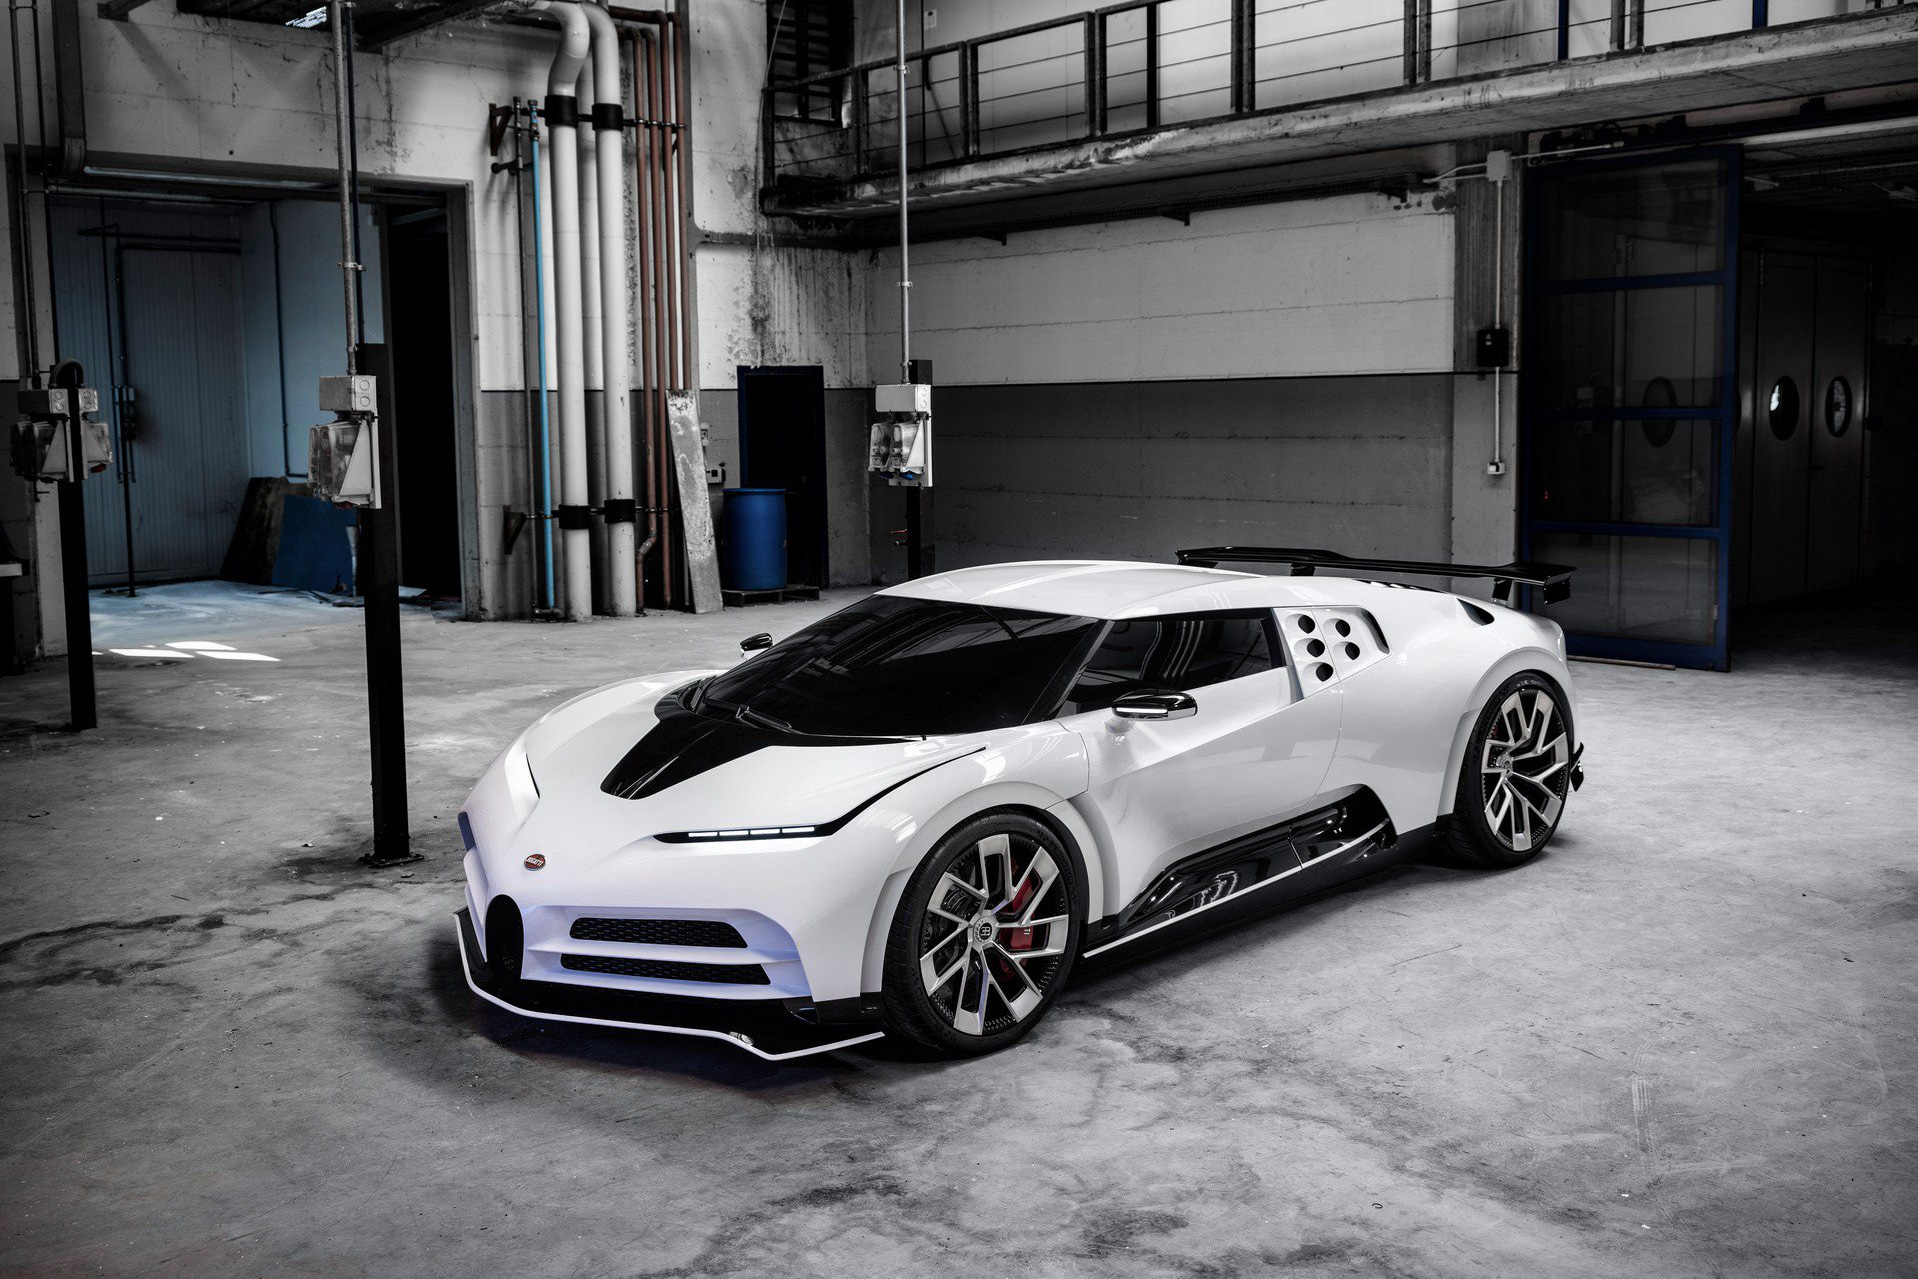 Khổ như đại gia mua Bugatti: Chi gần 10 triệu USD 'tậu' Centodieci sau 2 năm vẫn chưa nhận được xe